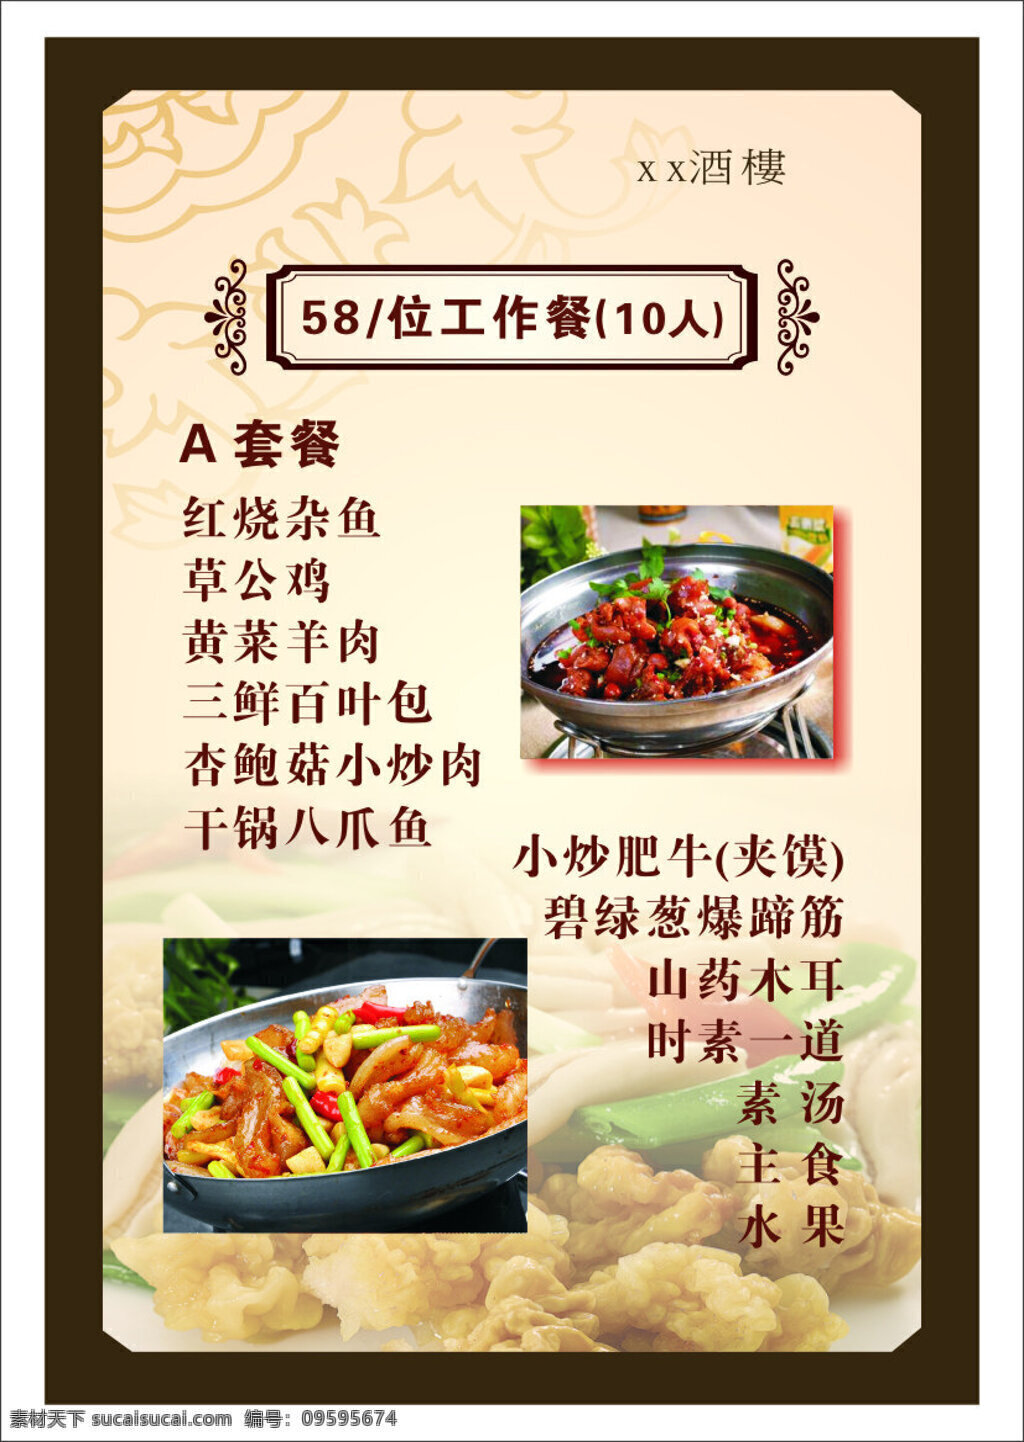 中式酒楼菜单 菜谱设计 中式 酒楼 菜单 菜谱 白色